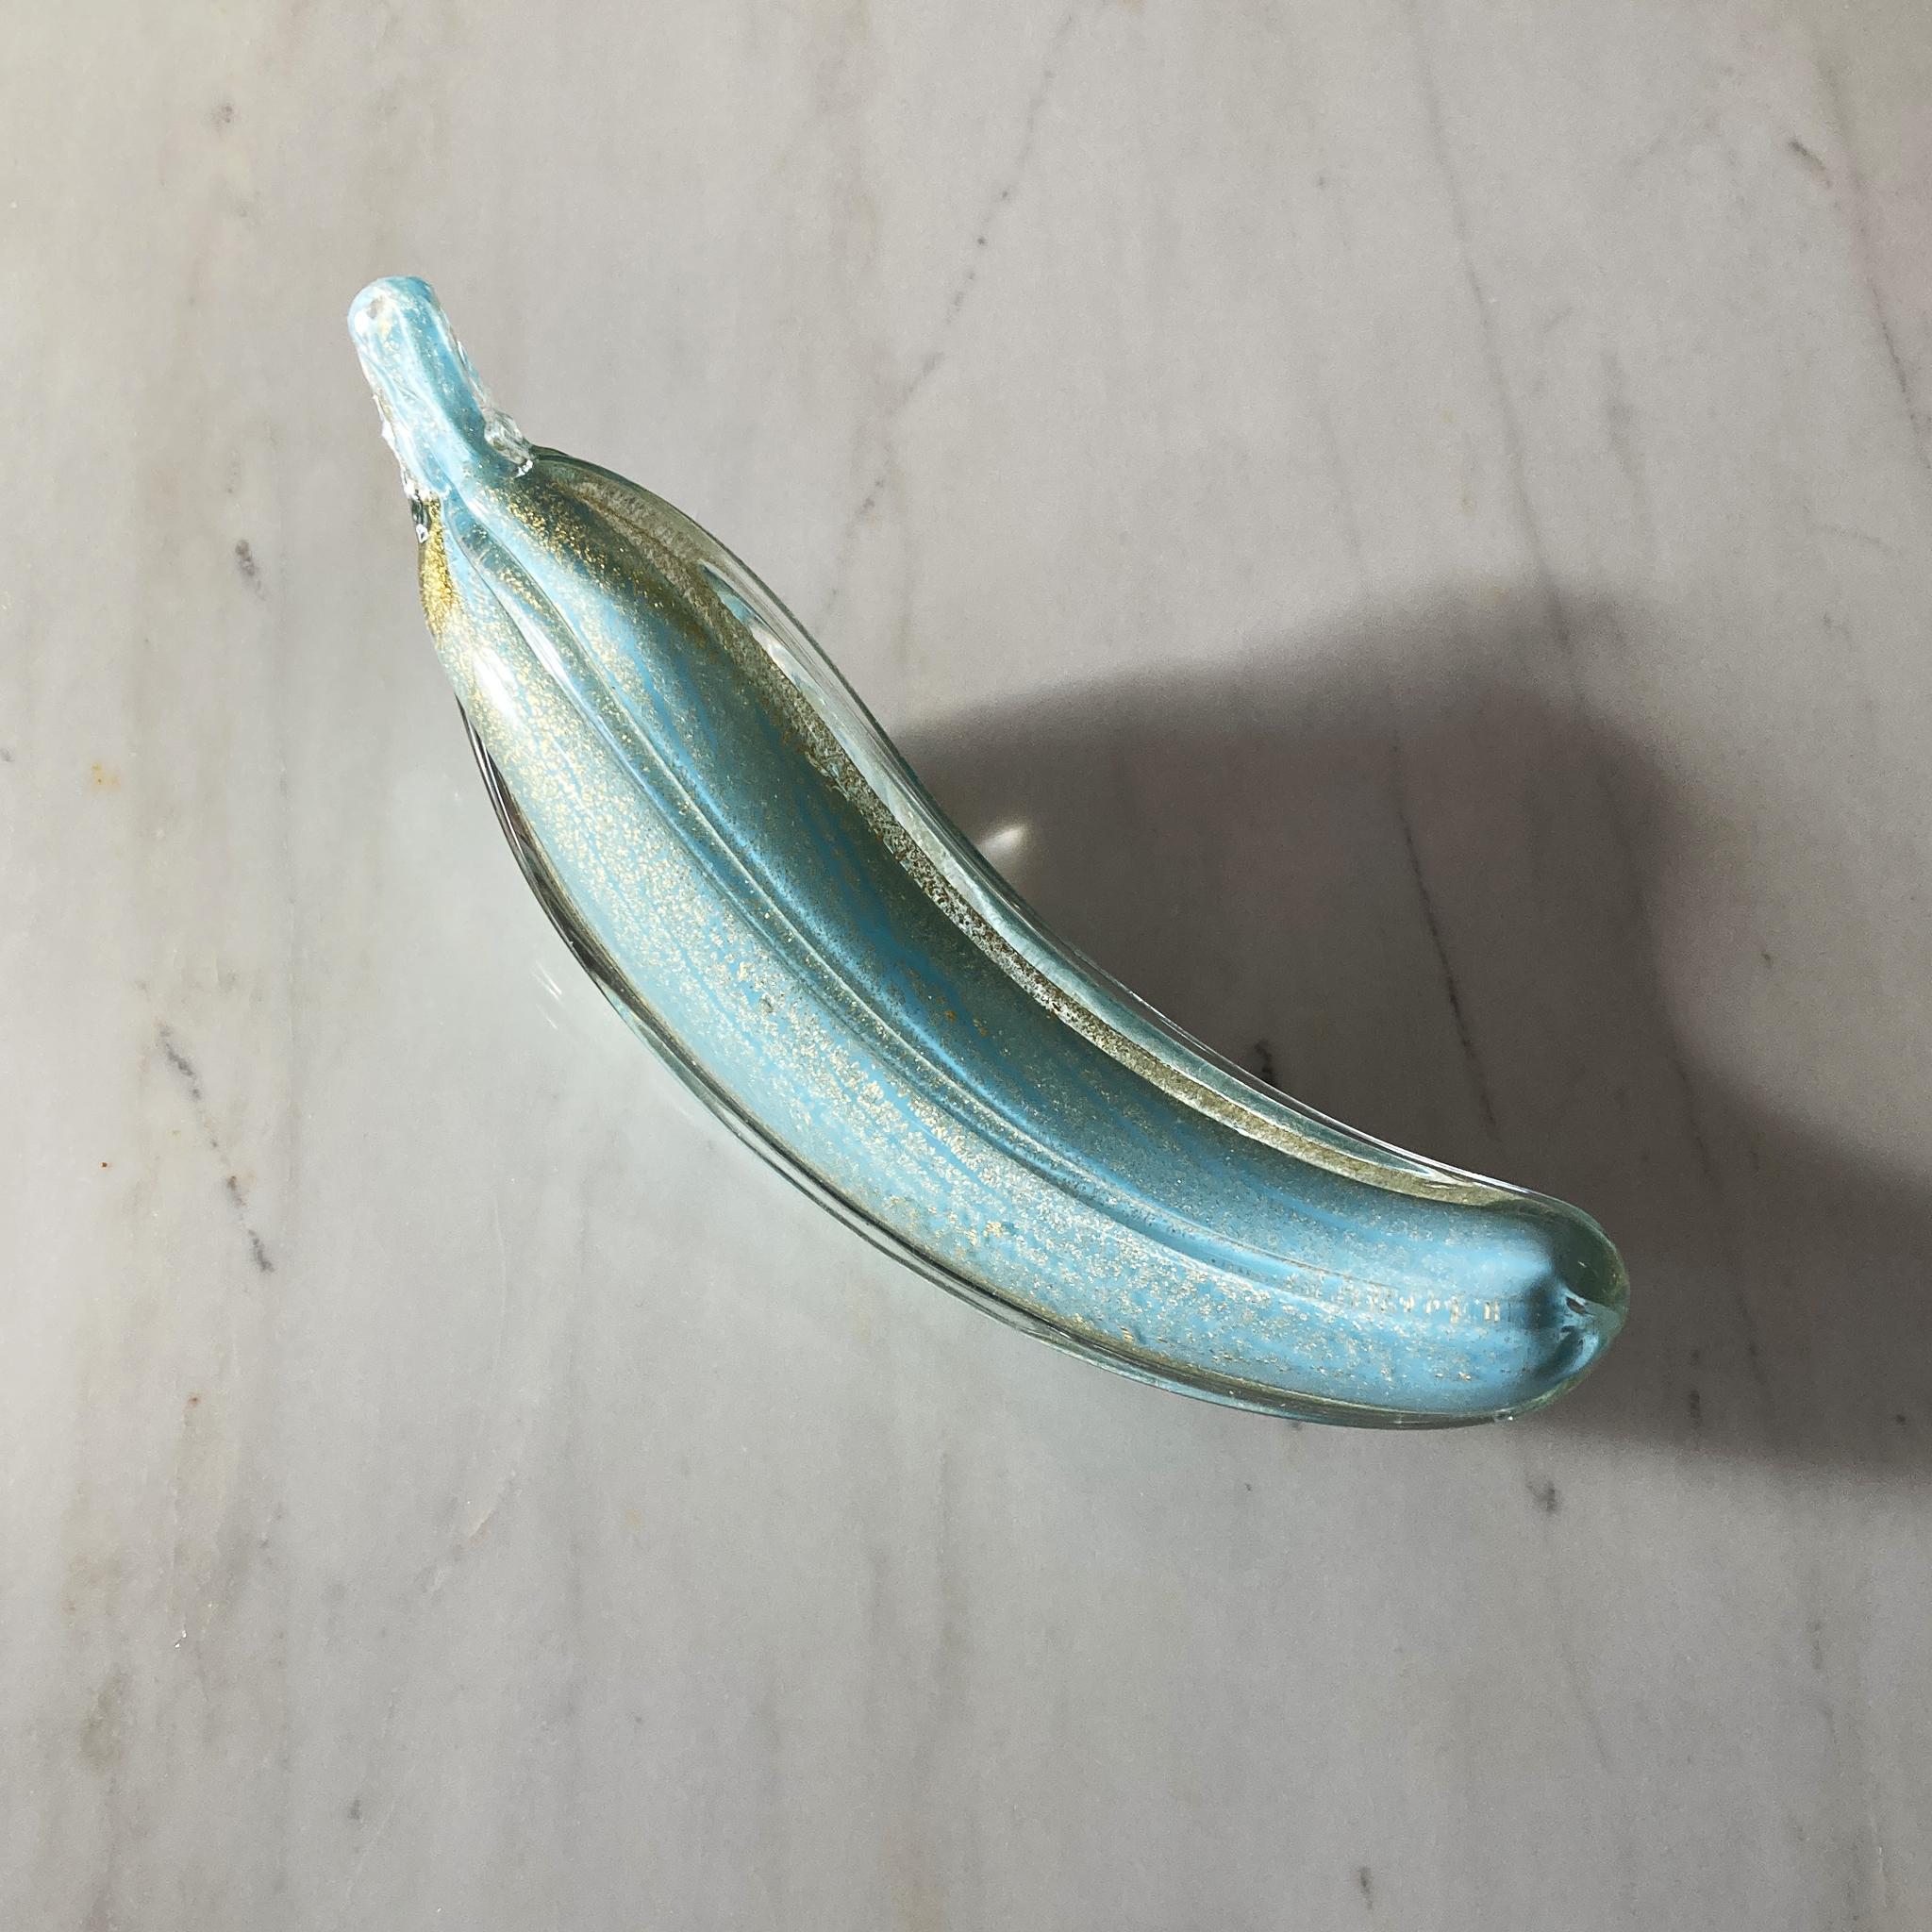 Superbe et unique banane soufflée à la main à Murano par Alfredo Barbini. Le verre aqua unique est entouré d'or et de verre transparent. Le verre brille lorsque la lumière frappe cette pièce sous différents angles.

En très bon état vintage,